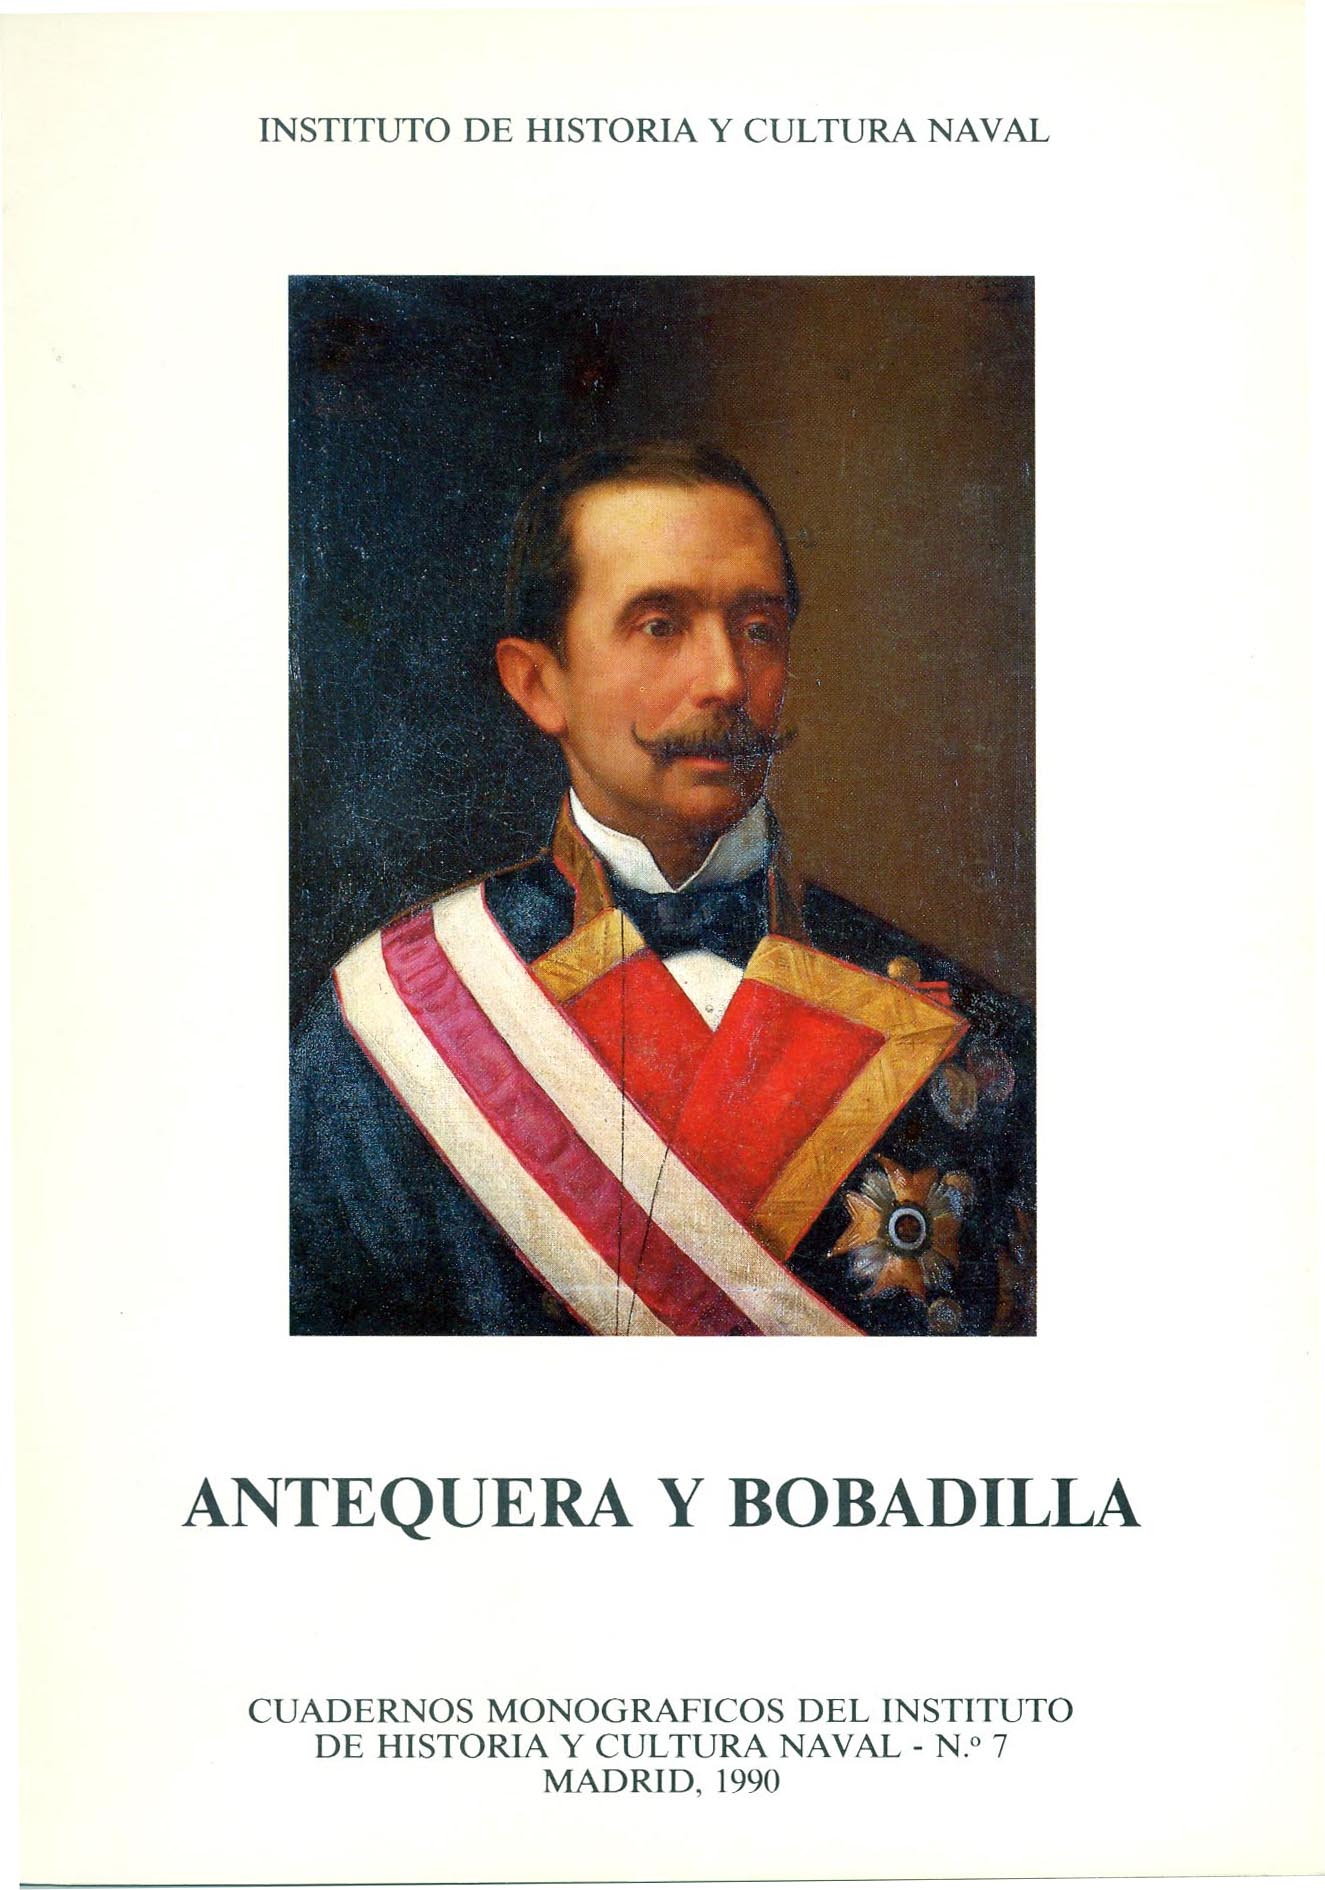 Antequera y Bobadilla